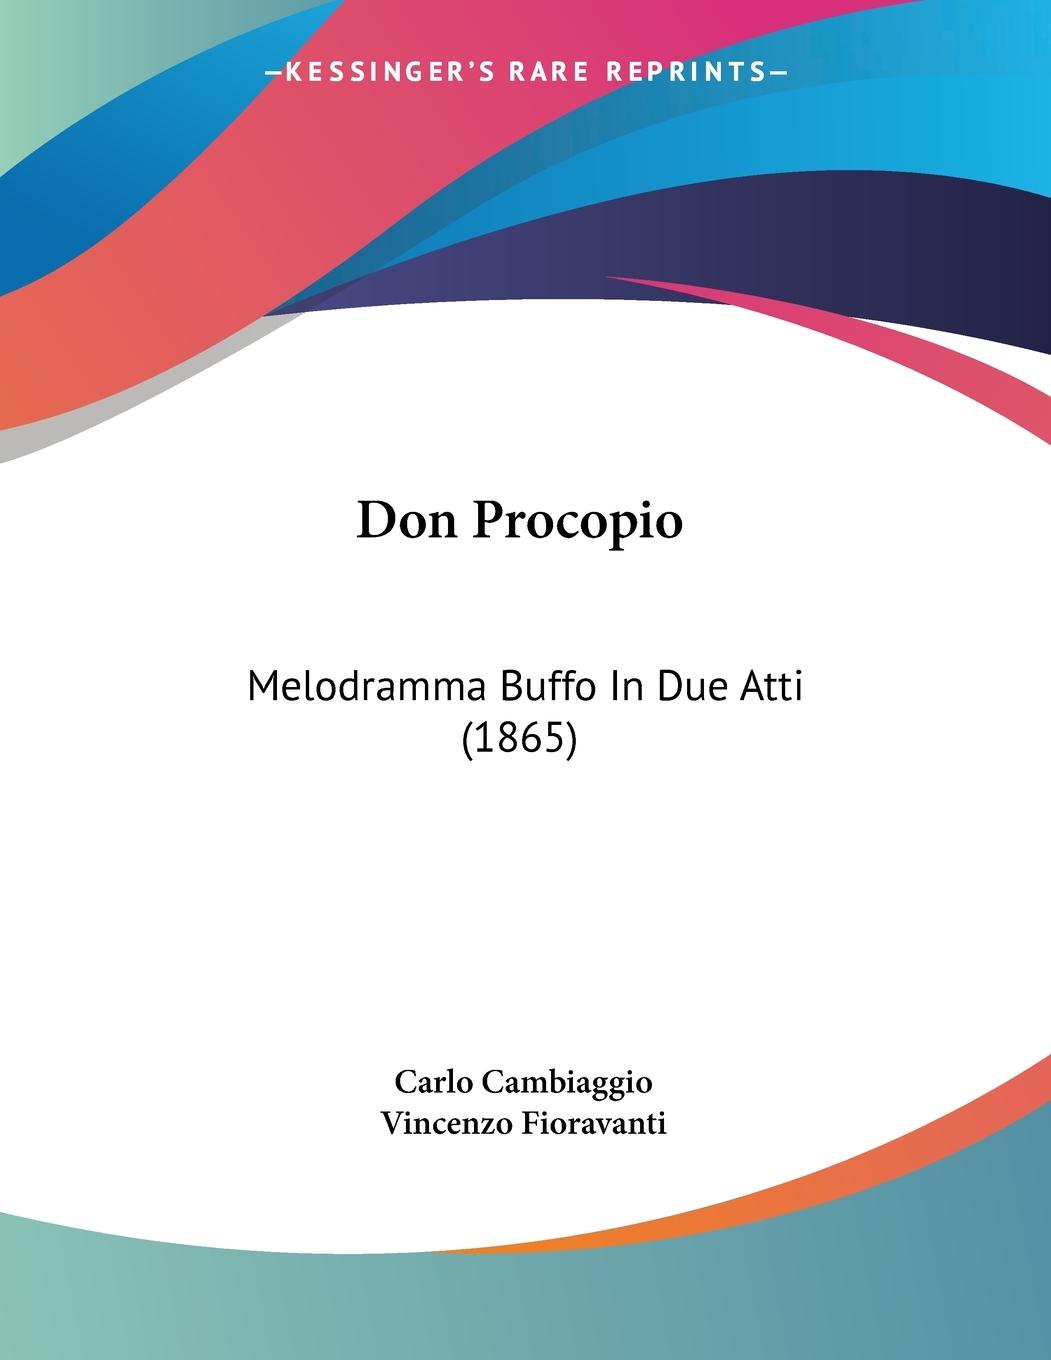 Don Procopio - Cambiaggio, Carlo Fioravanti, Vincenzo